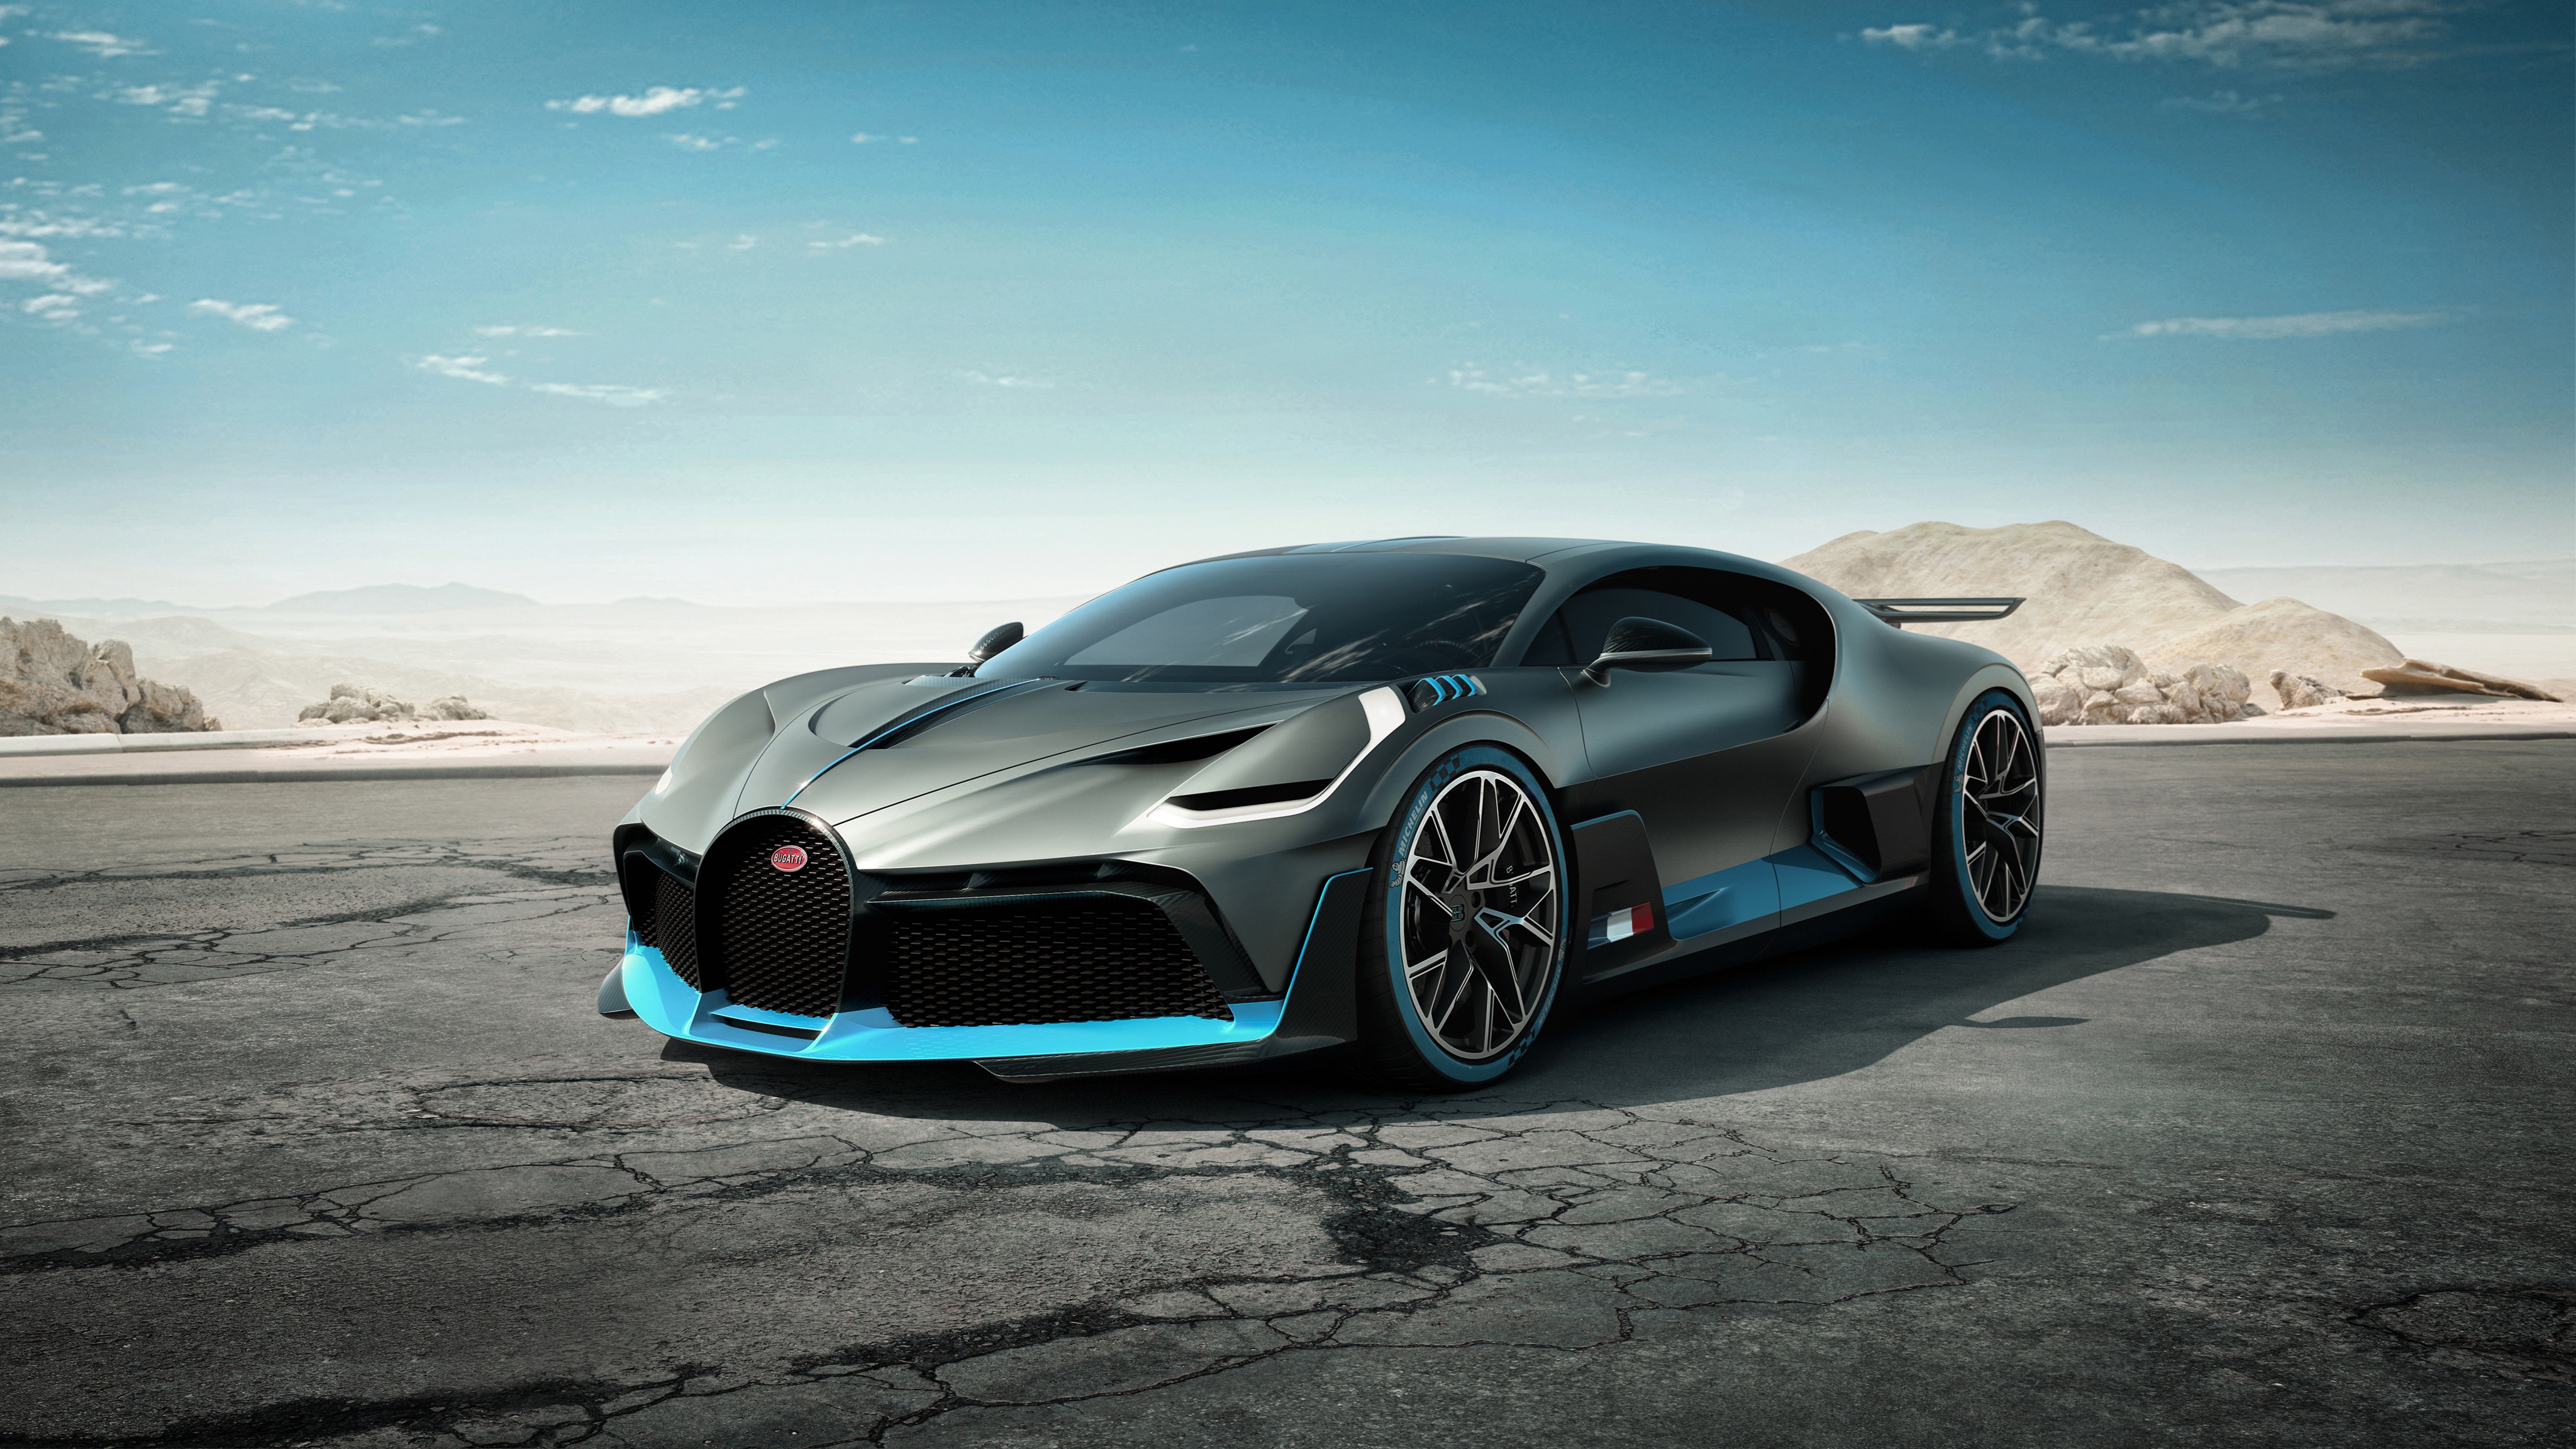 Télécharger des fonds d'écran Bugatti Divo HD